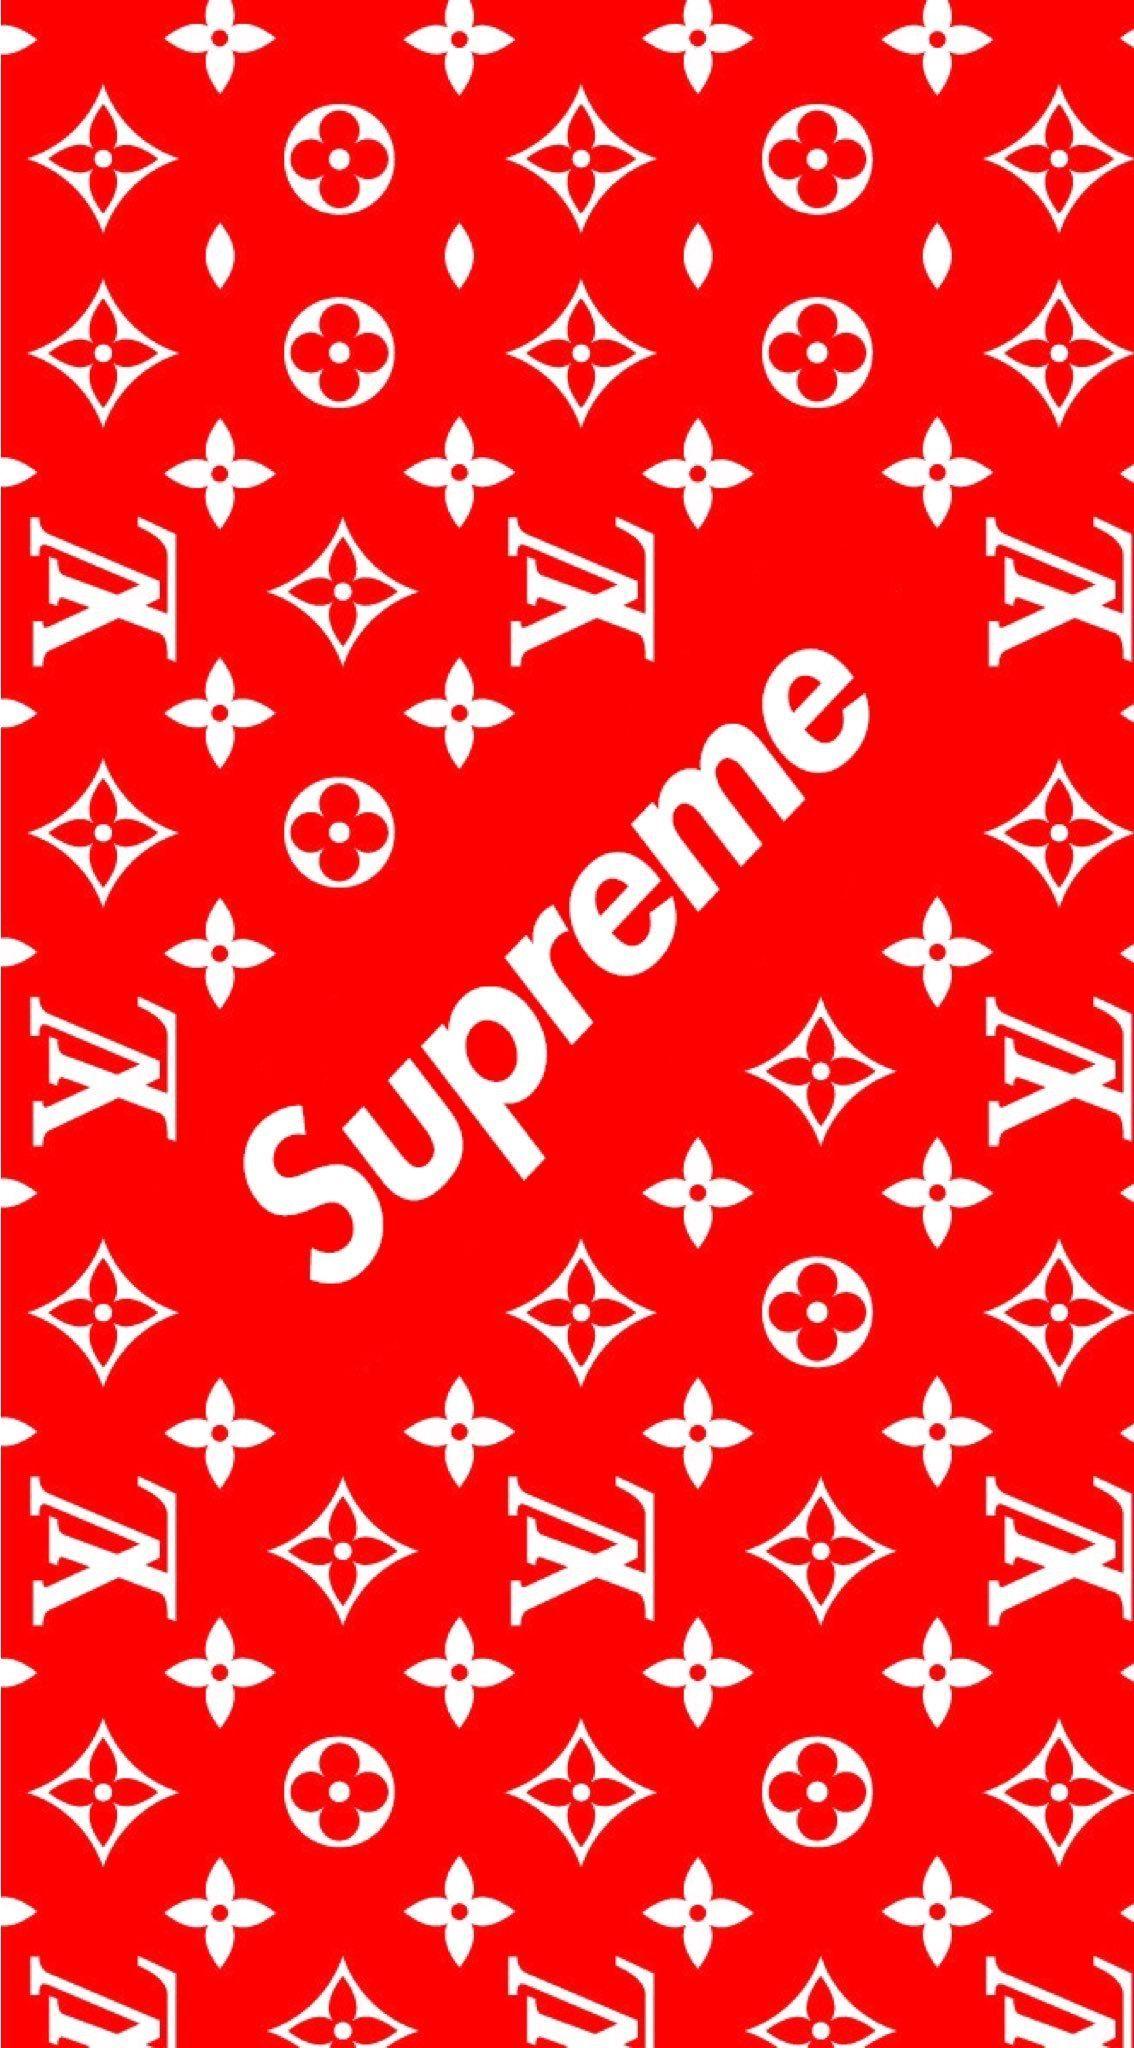 Loui Supreme Logo - Supreme x Louis Vuitton | Brands | Pinterest | Supreme wallpaper ...